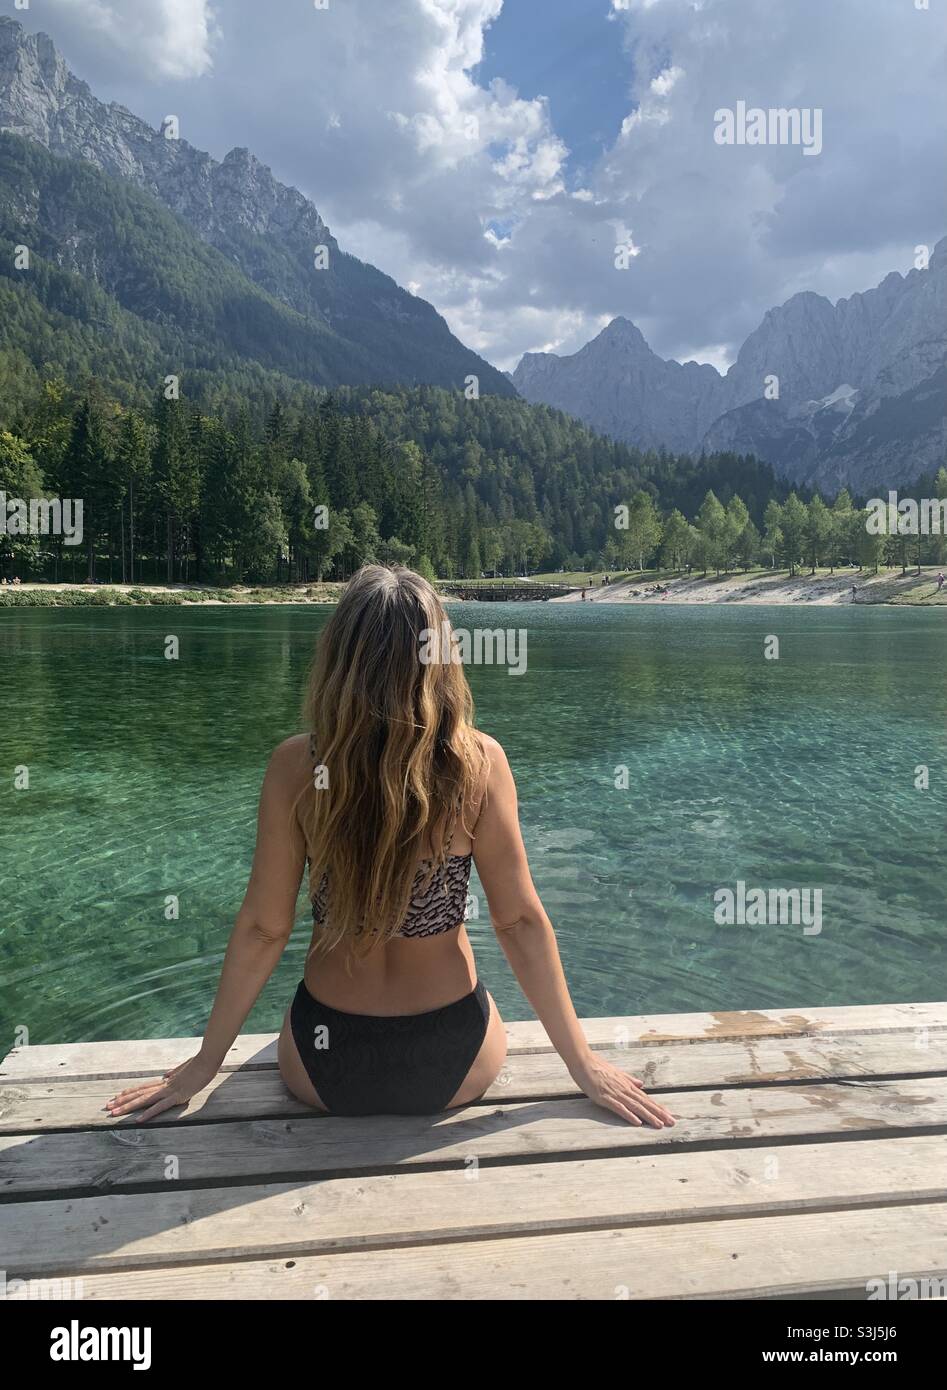 Mujer sentada a orillas del lago jasna en el muelle de madera Foto de stock